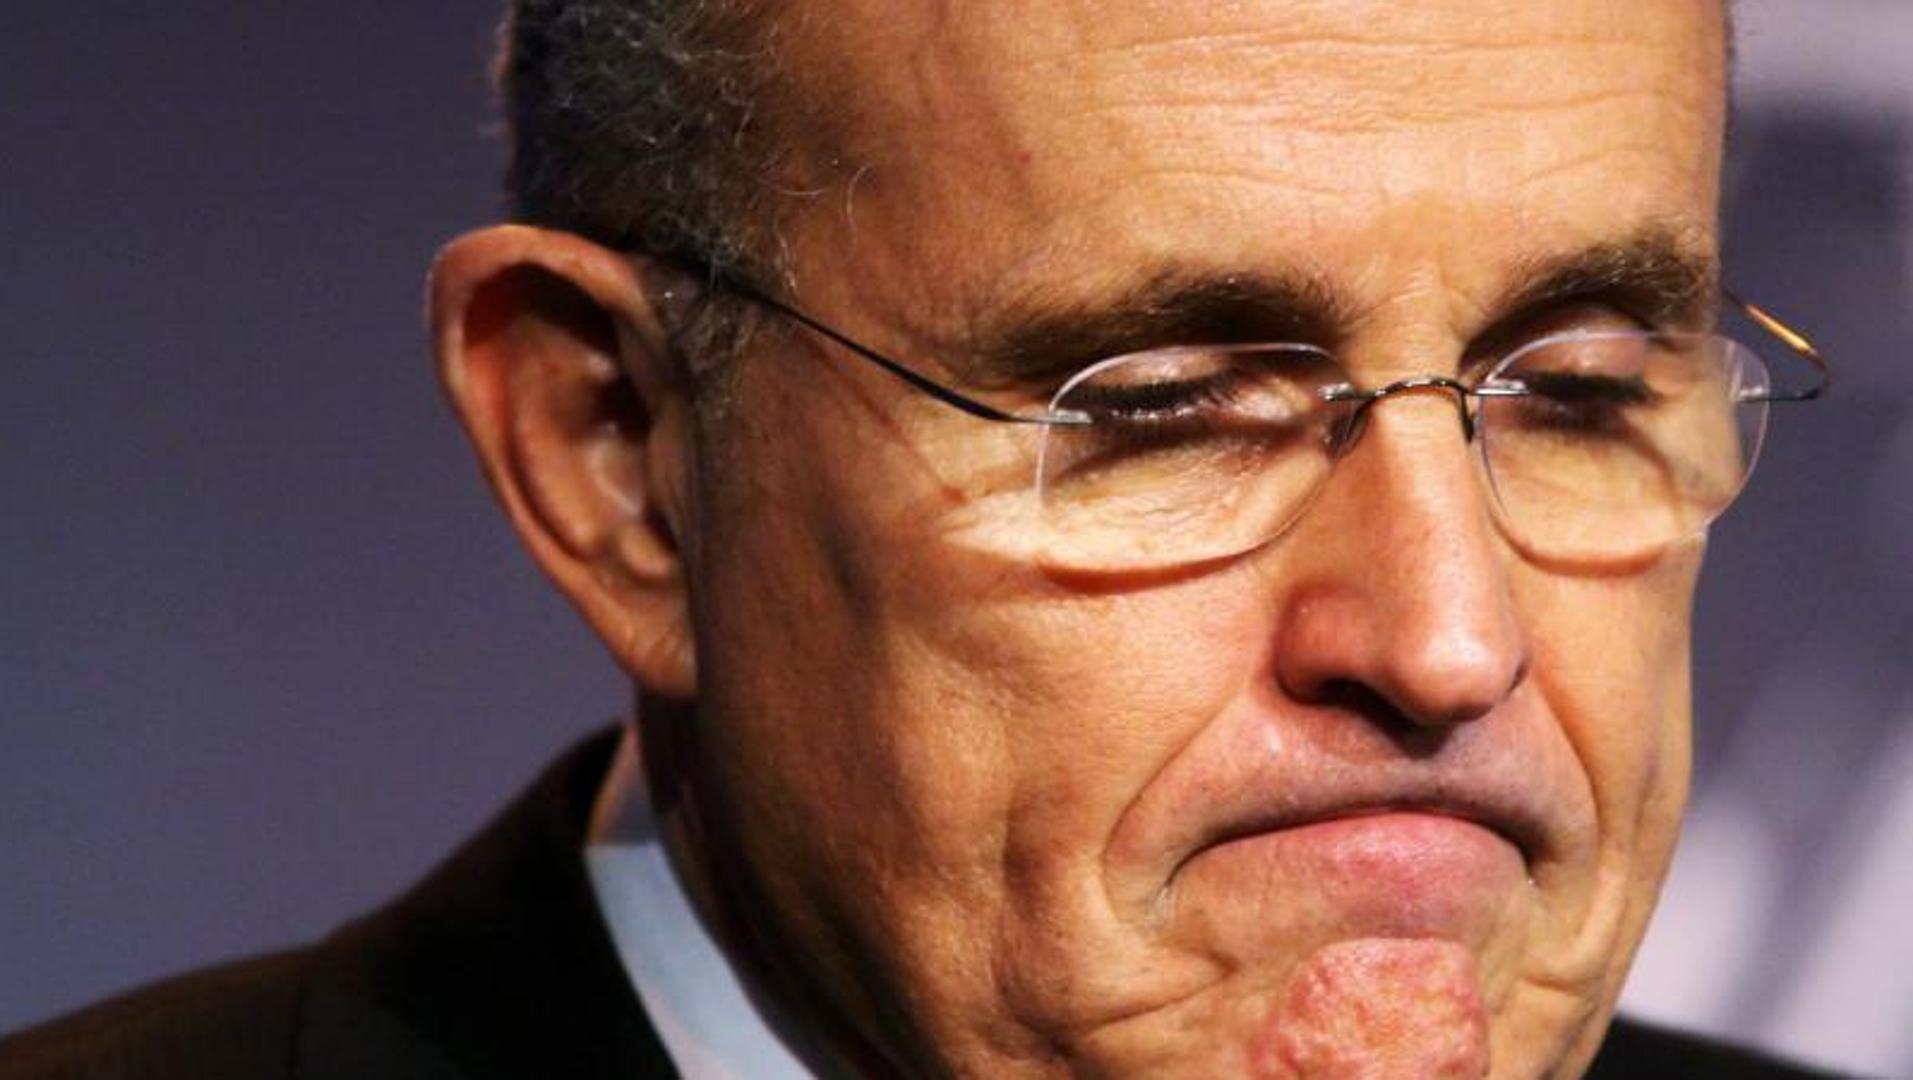 Employee accuses former New York Mayor Giuliani of sexual assault